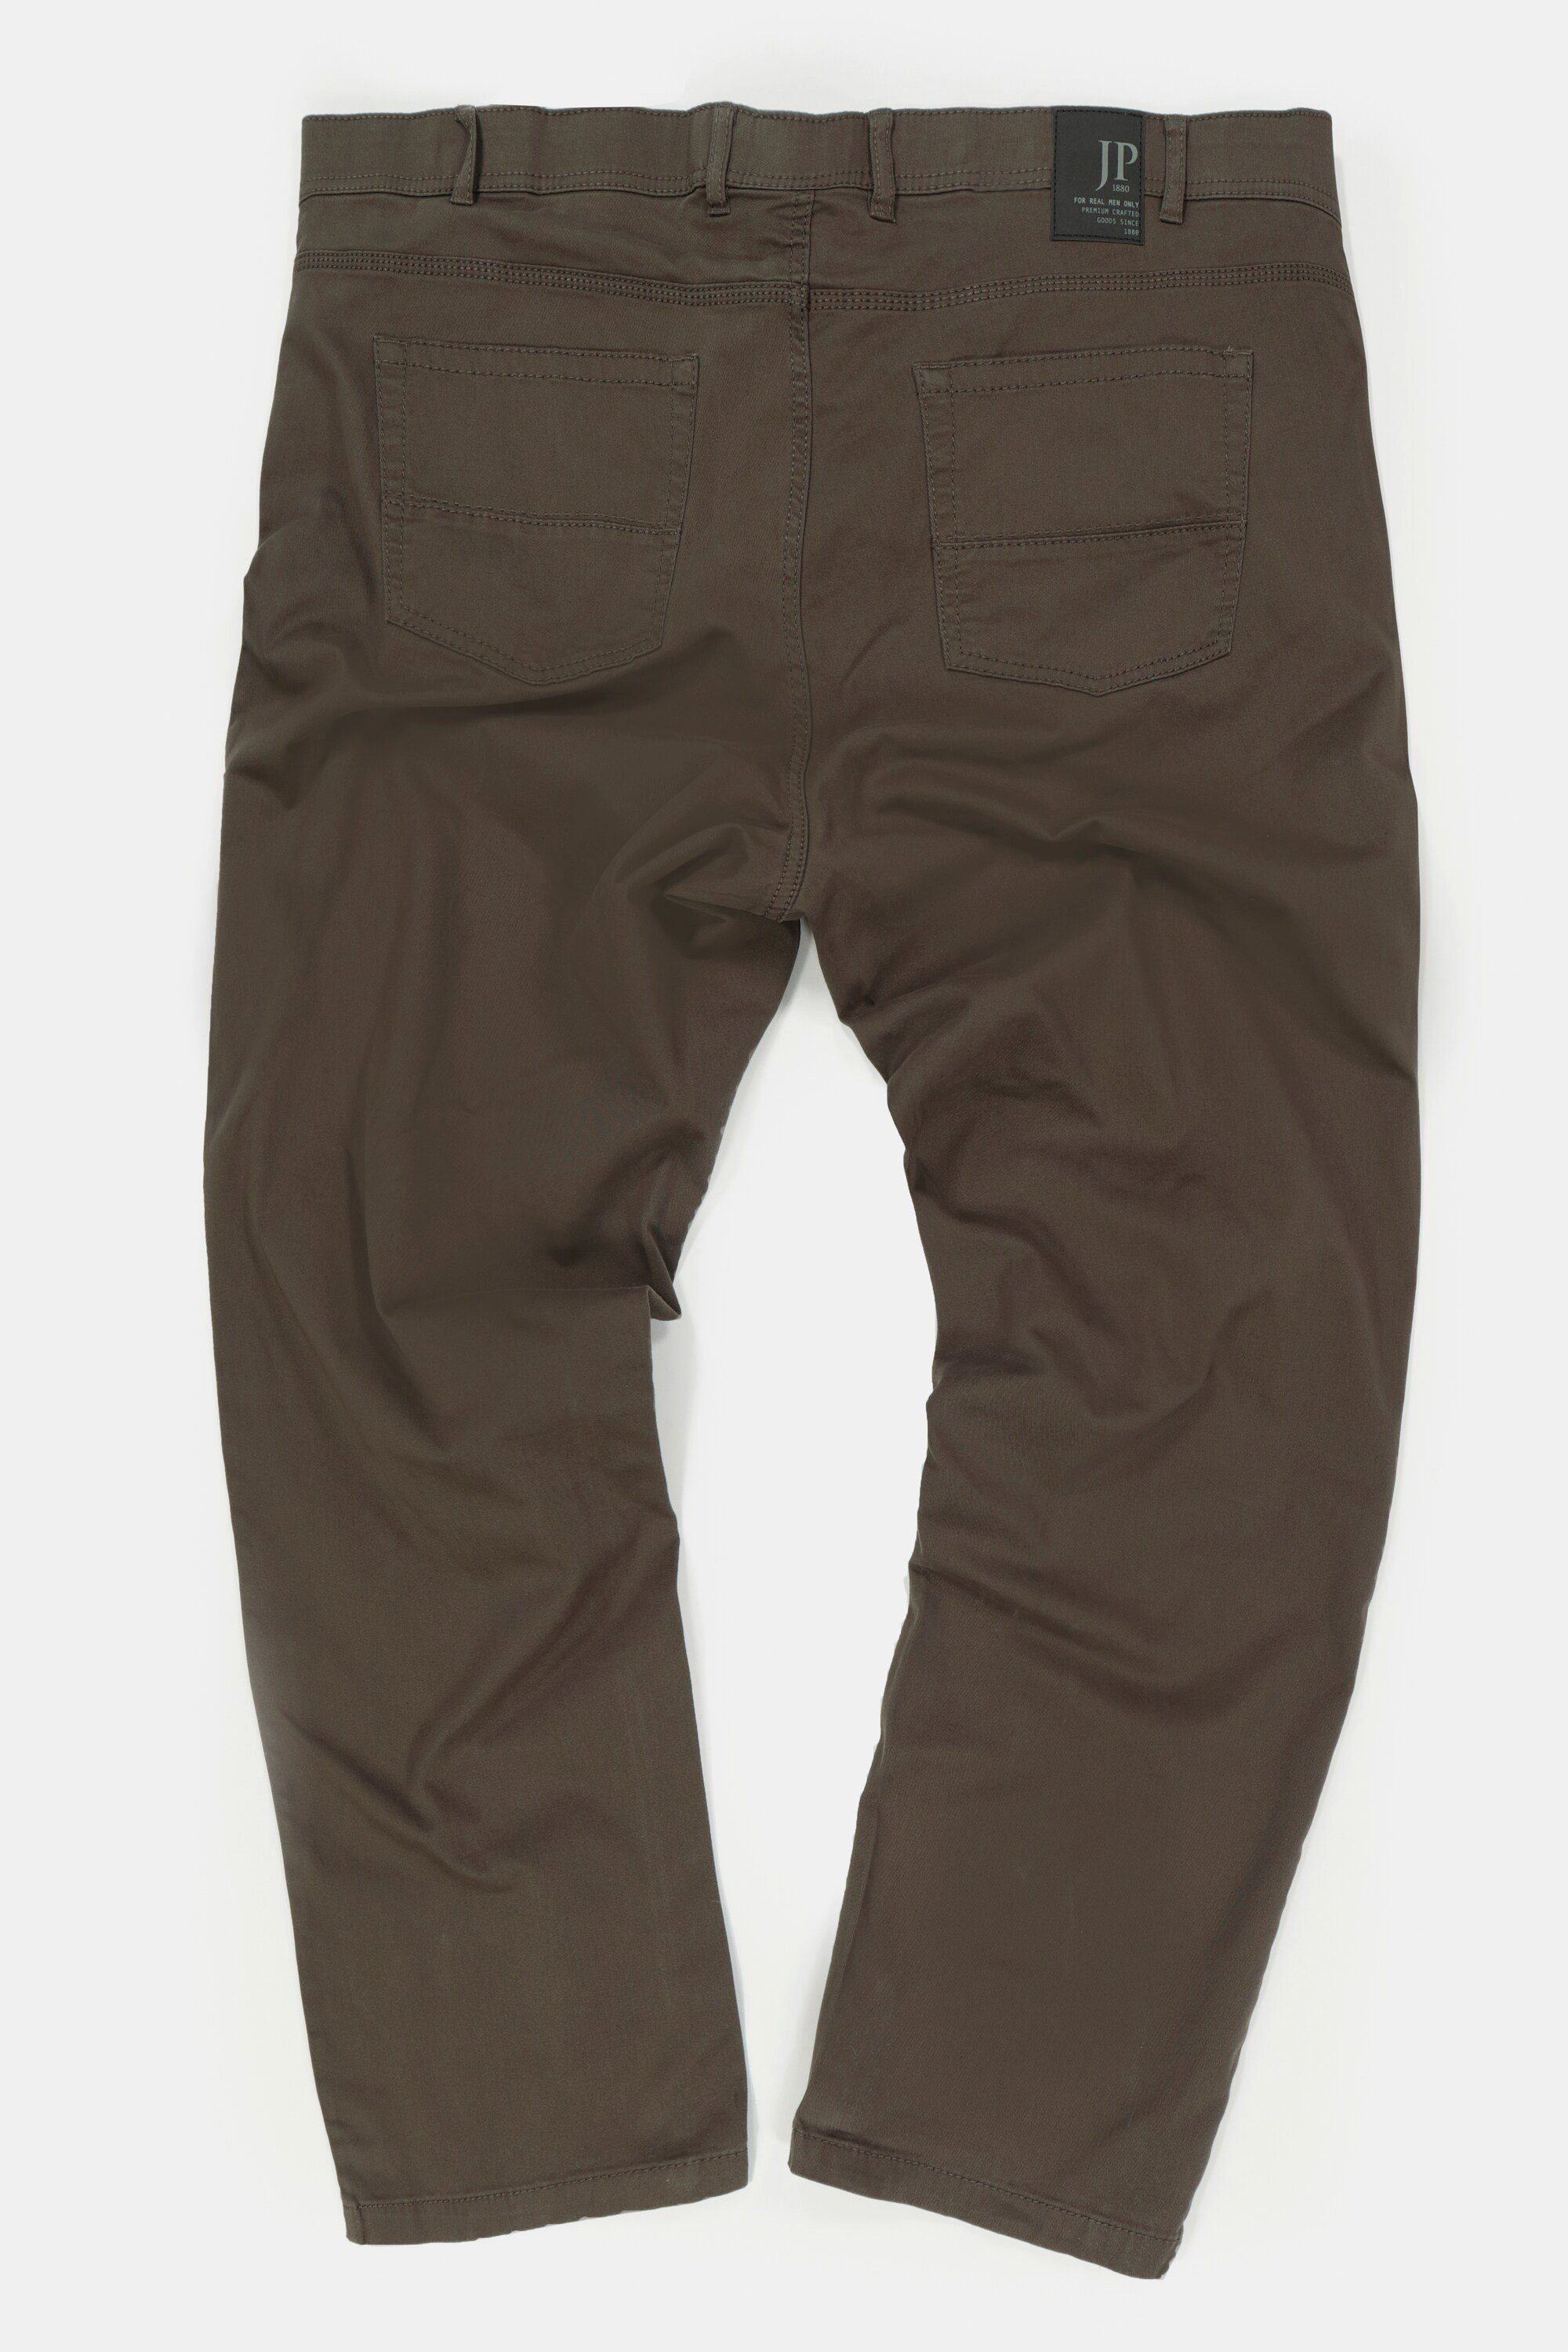 5-Pocket oliv Hose Bund dunkel Regular Fit JP1880 5-Pocket-Jeans elastischer